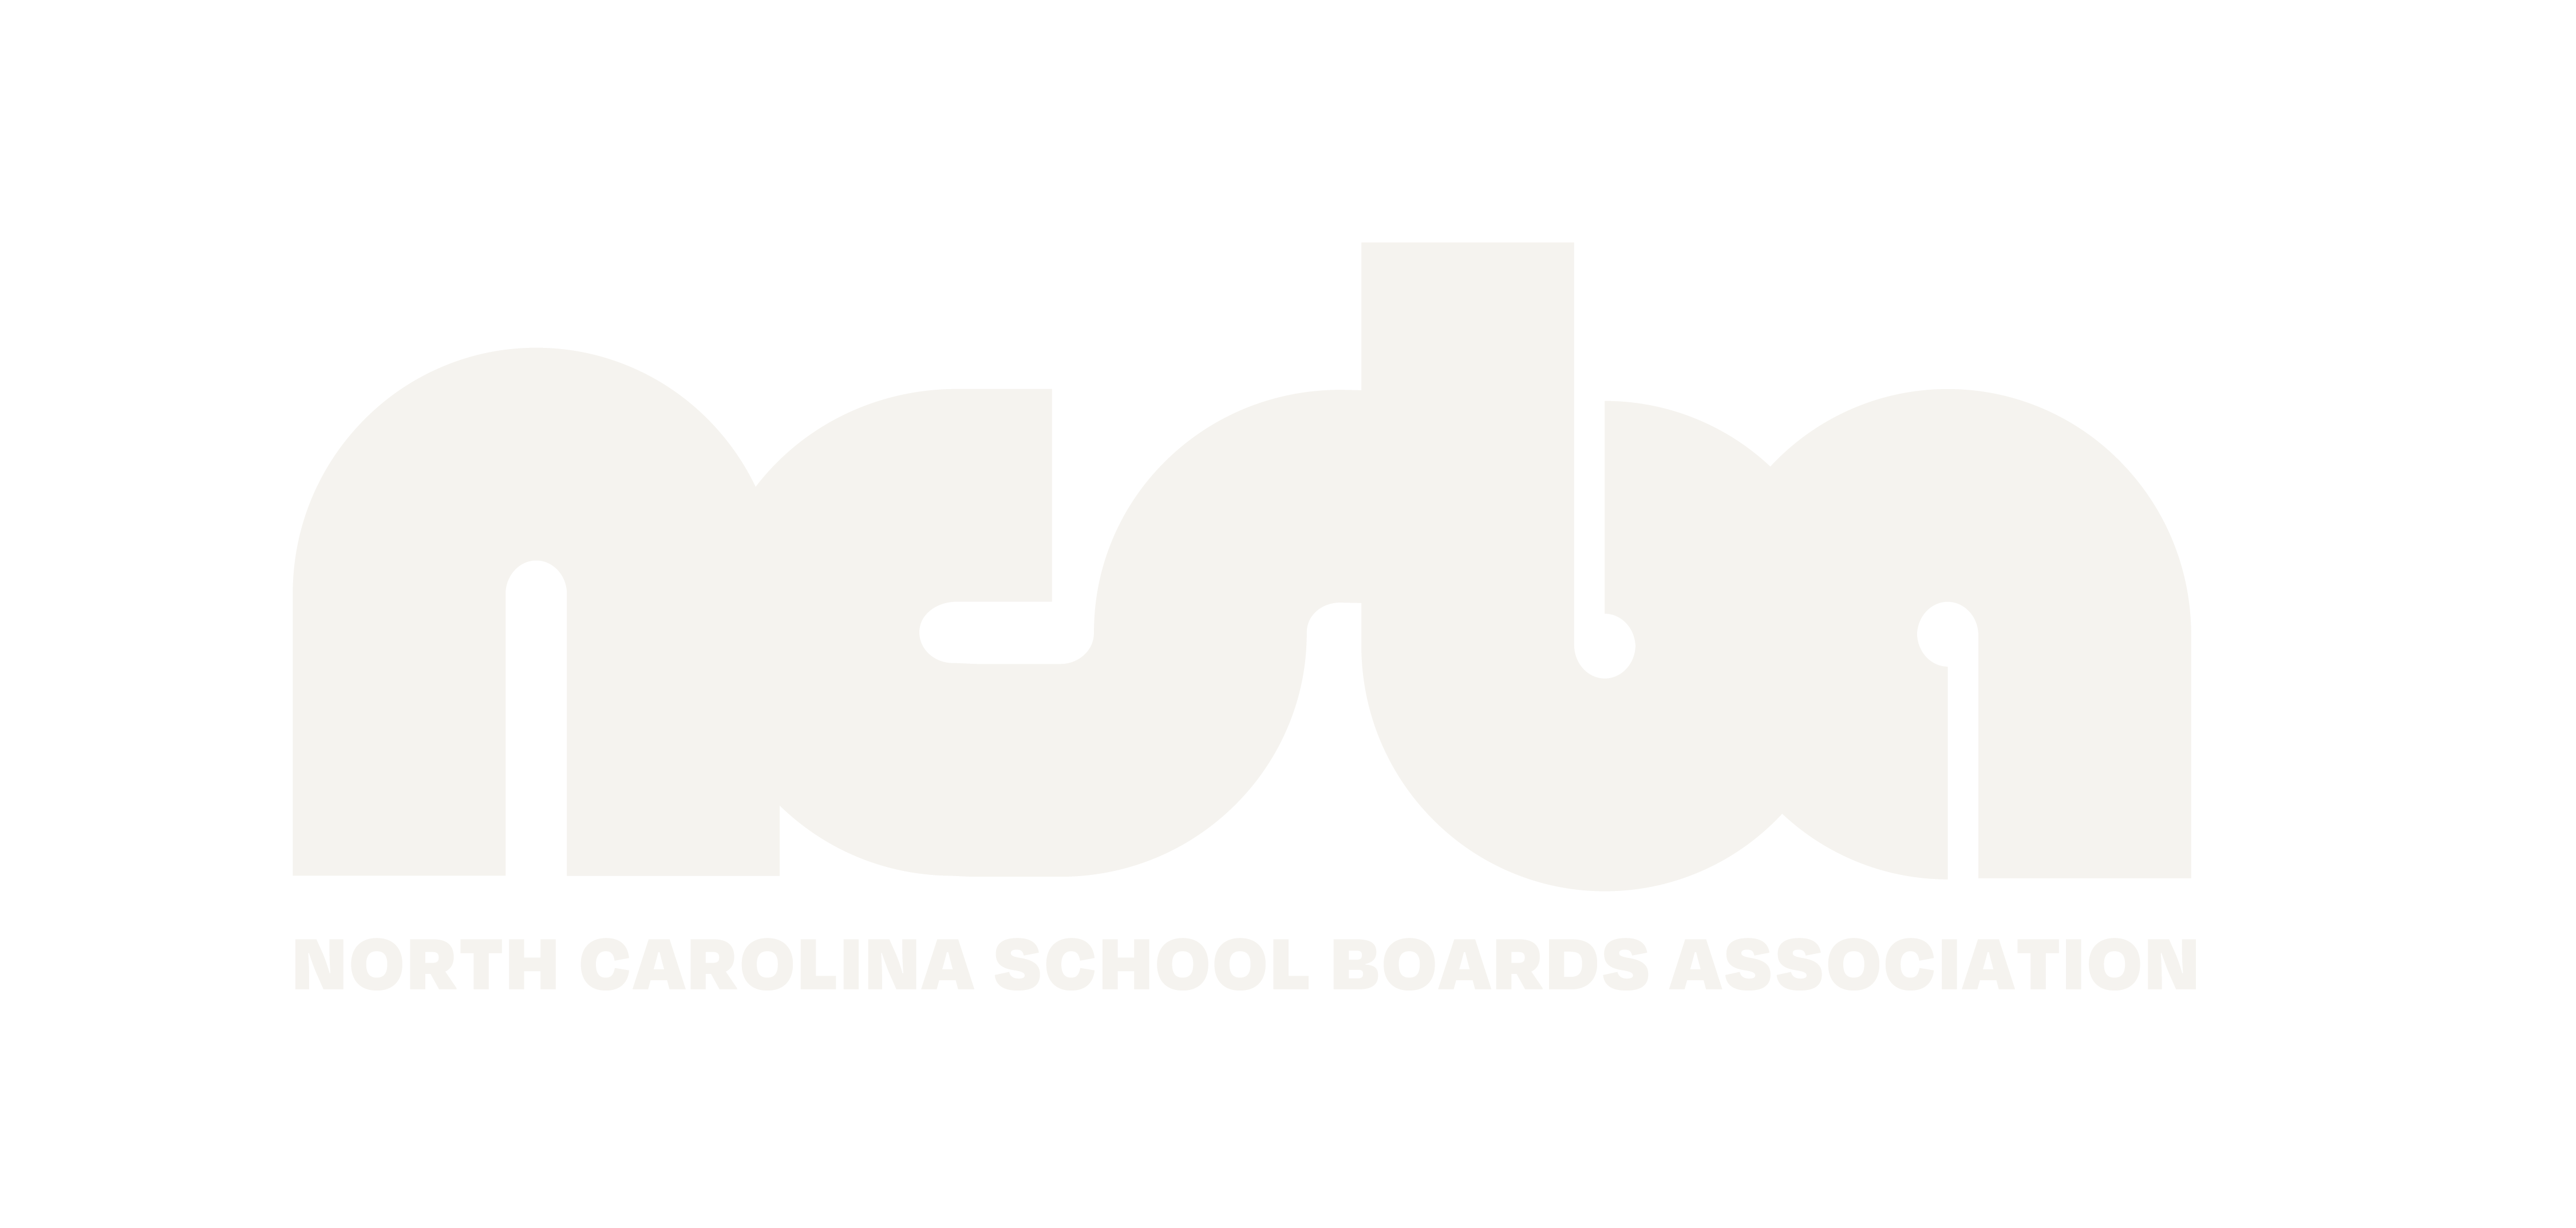 North Carolina School Boards Association